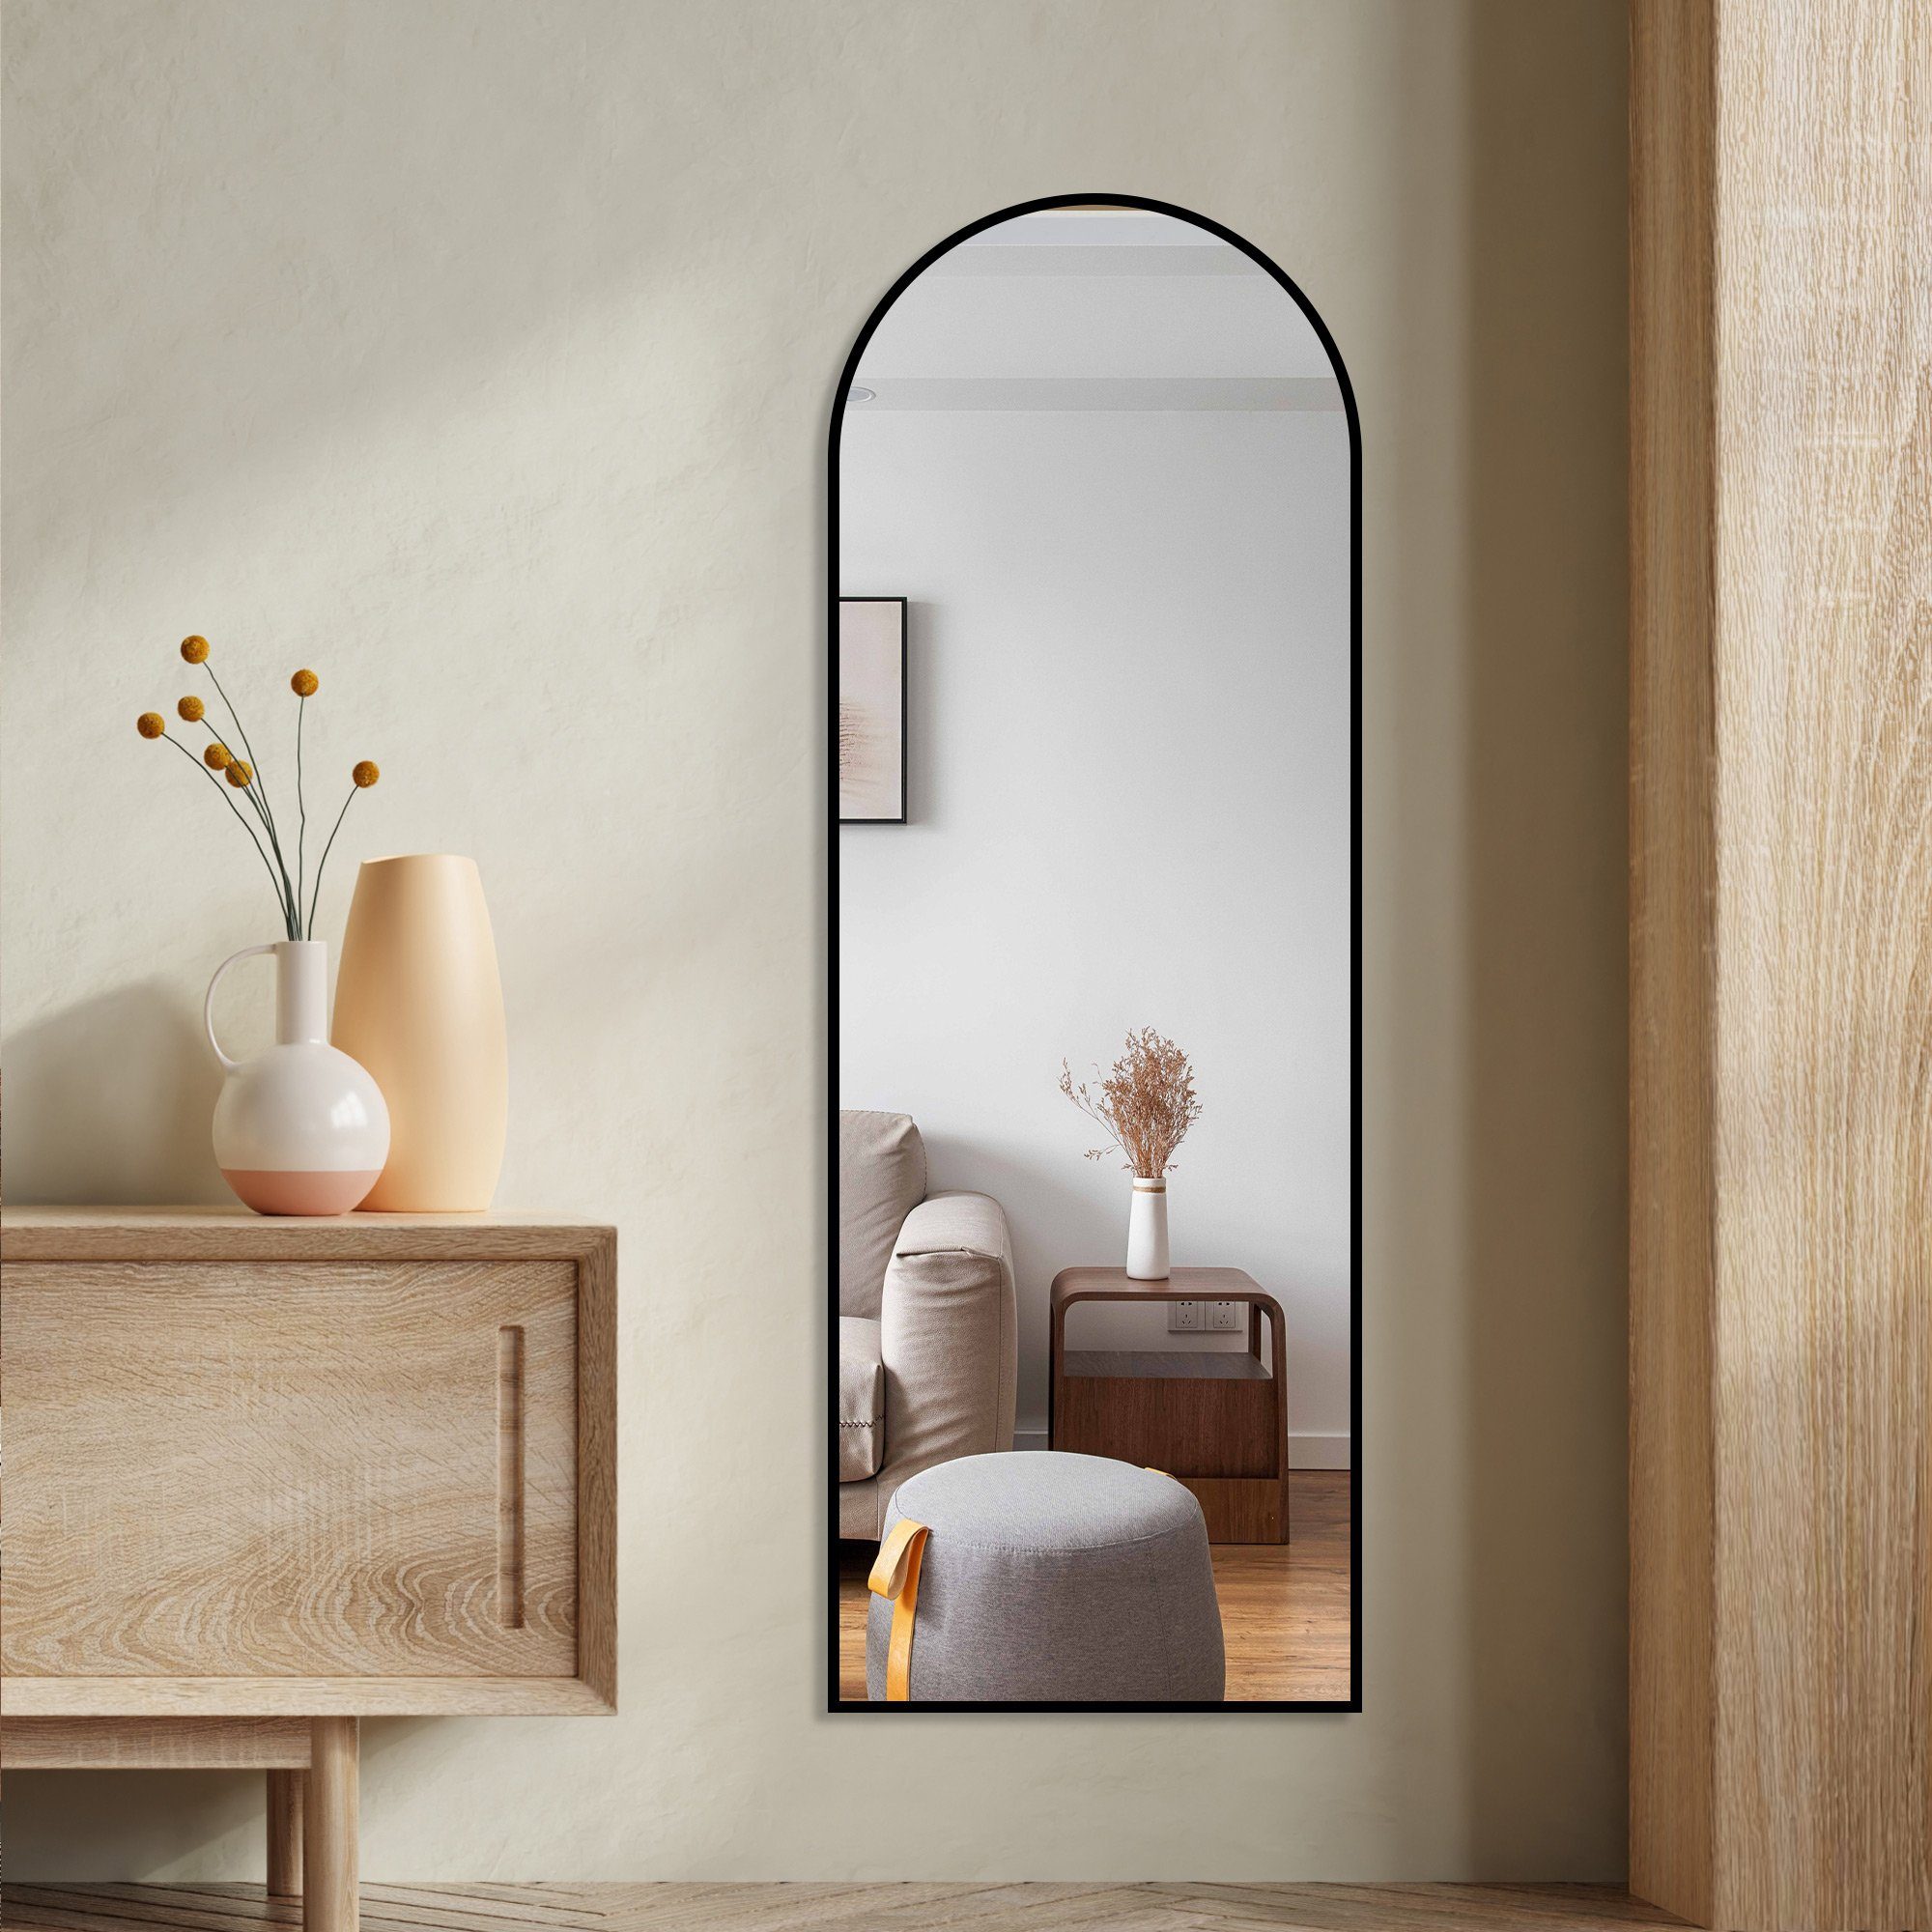 Boromal Spiegel Schwarz groß 150x50 Spiegel Flur Ganzkörper Flurspiegel Wandspiegel (Rundboegn Oval, mit Aluminiumrahmen), hängend, Wand gelehnt